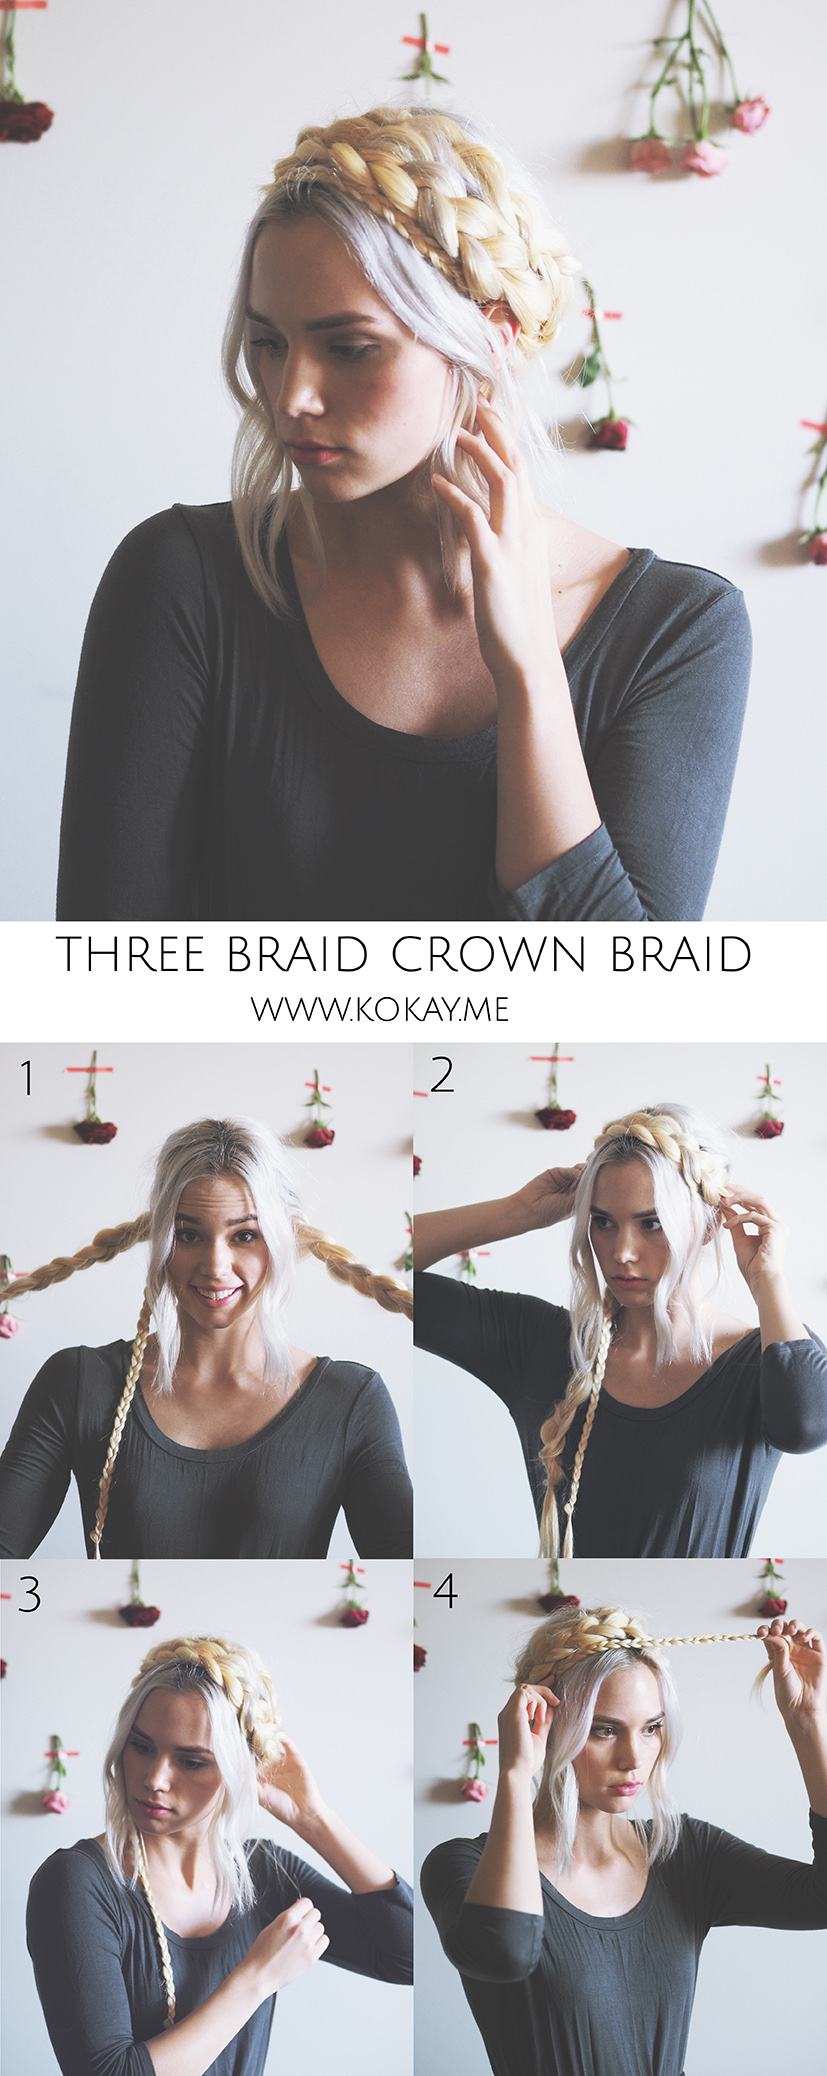 Crown braid tutorial